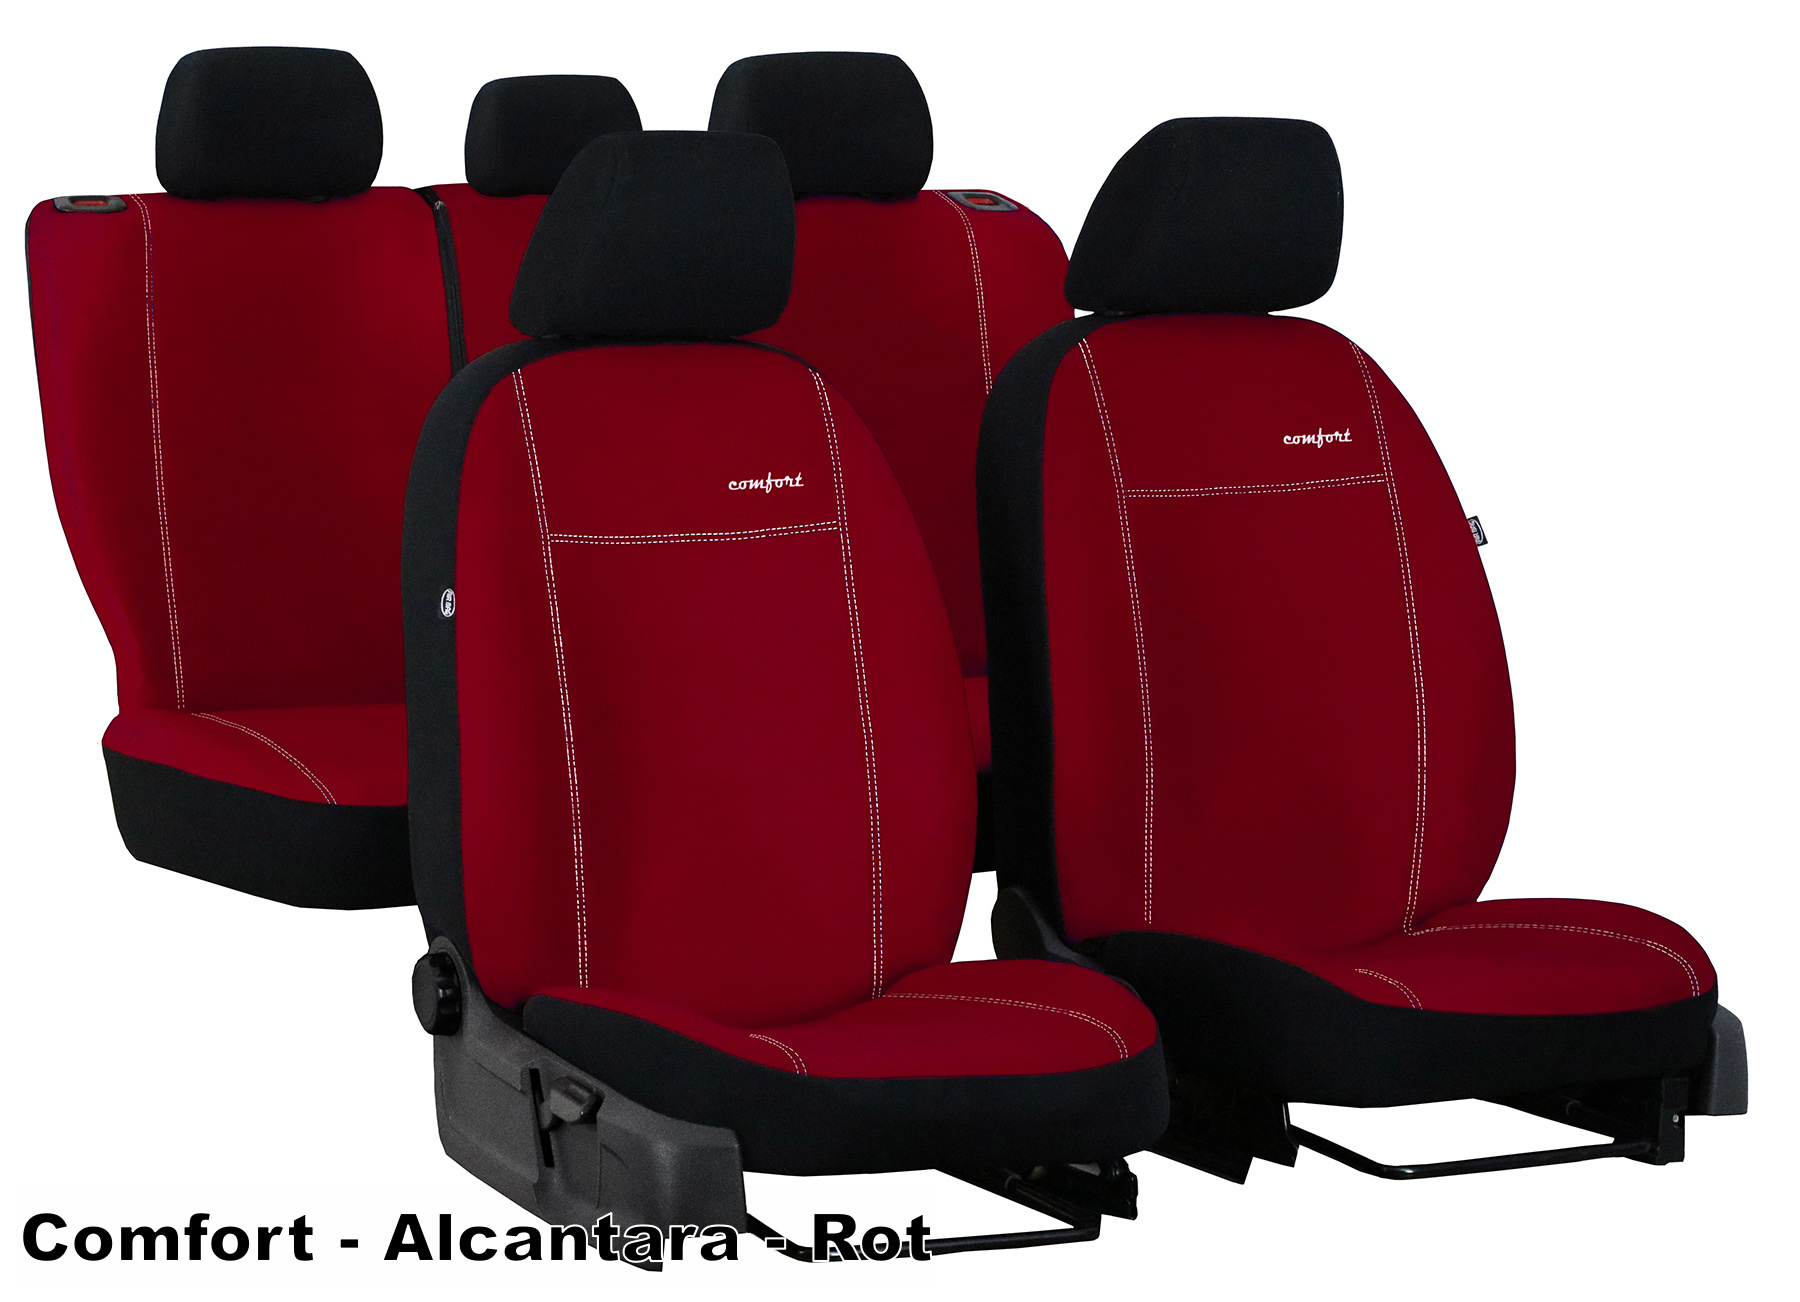 Sitzbezüge passend für Mercedes Benz G-Klasse in Schwarz Rot